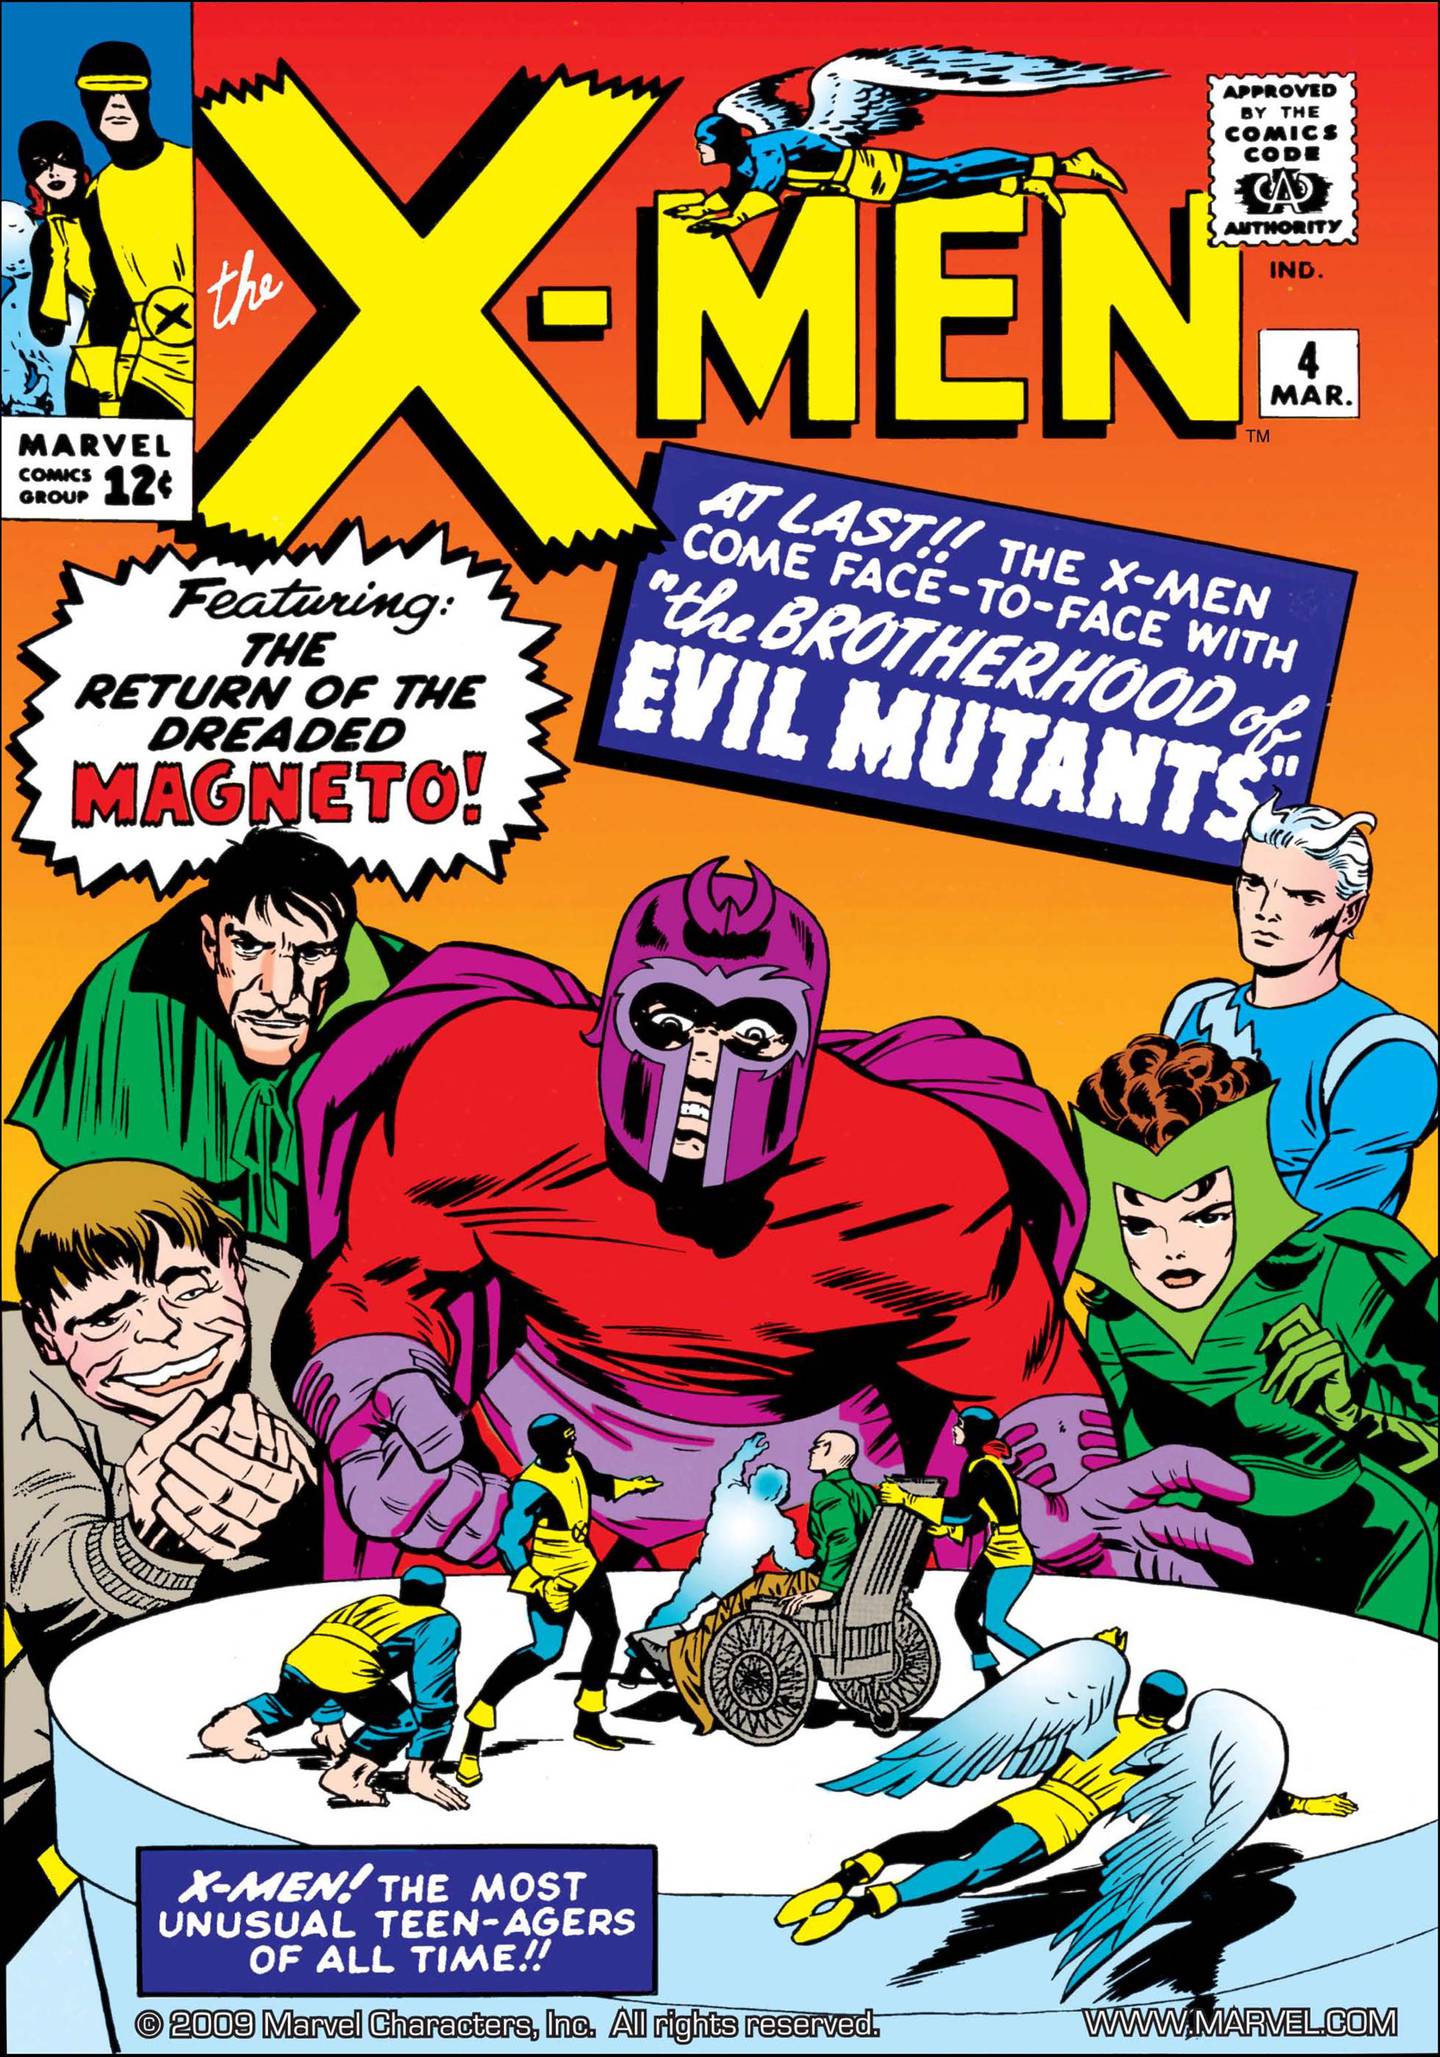 The X-Men vol. 1 #4 de 1964, donde apareció Scarlet Witch